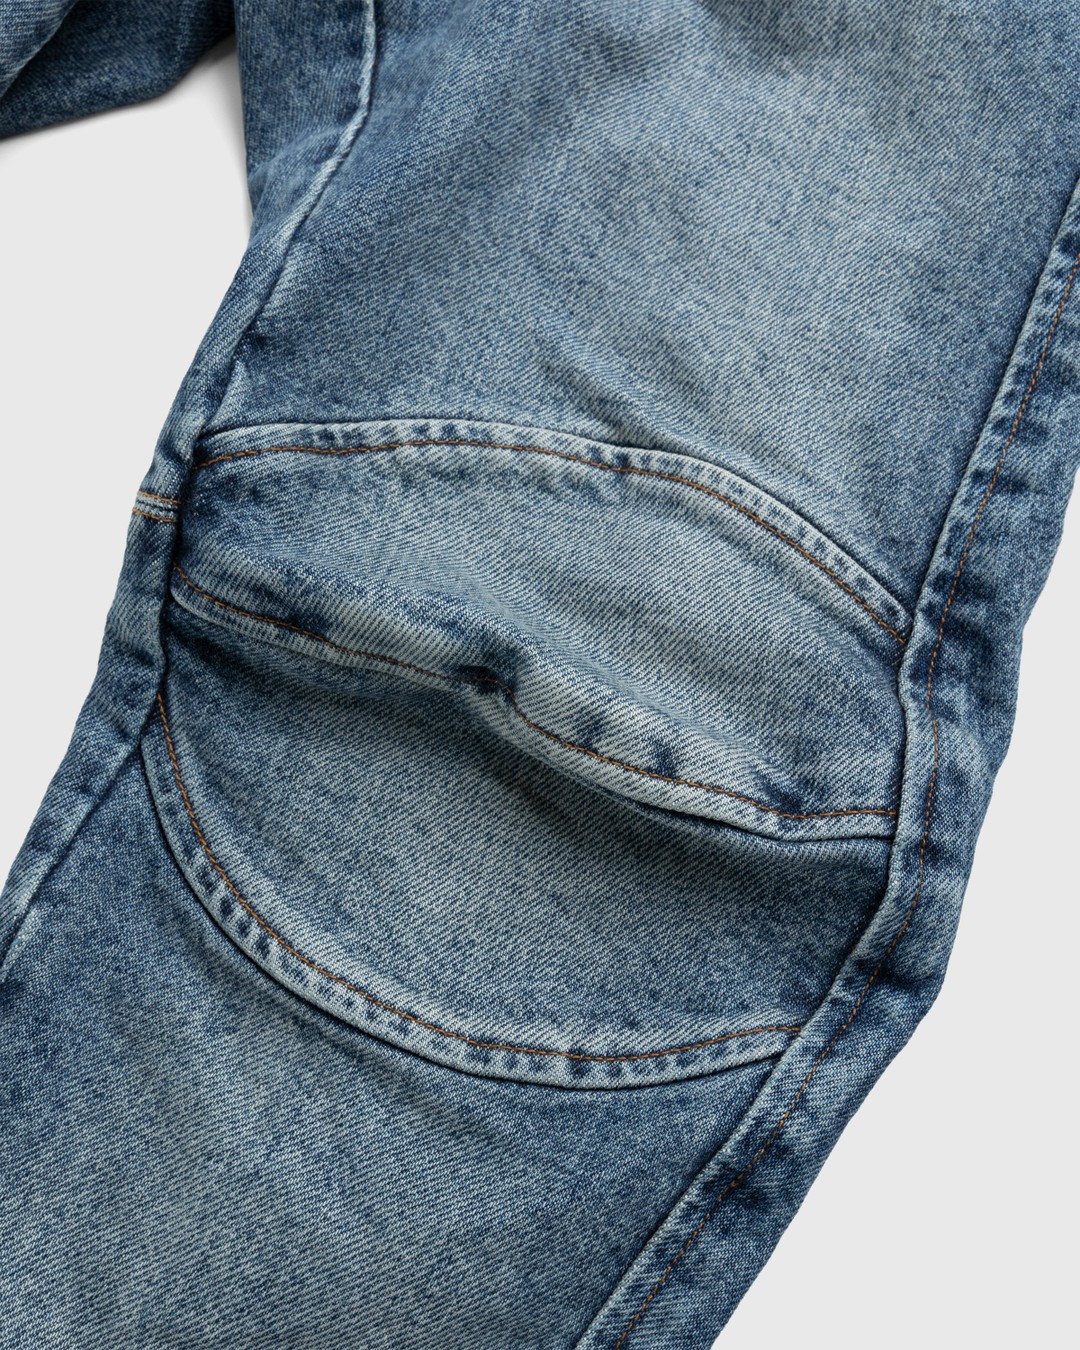 Diesel – Generate Straight Jeans Blue - Denim - Blue - Image 7